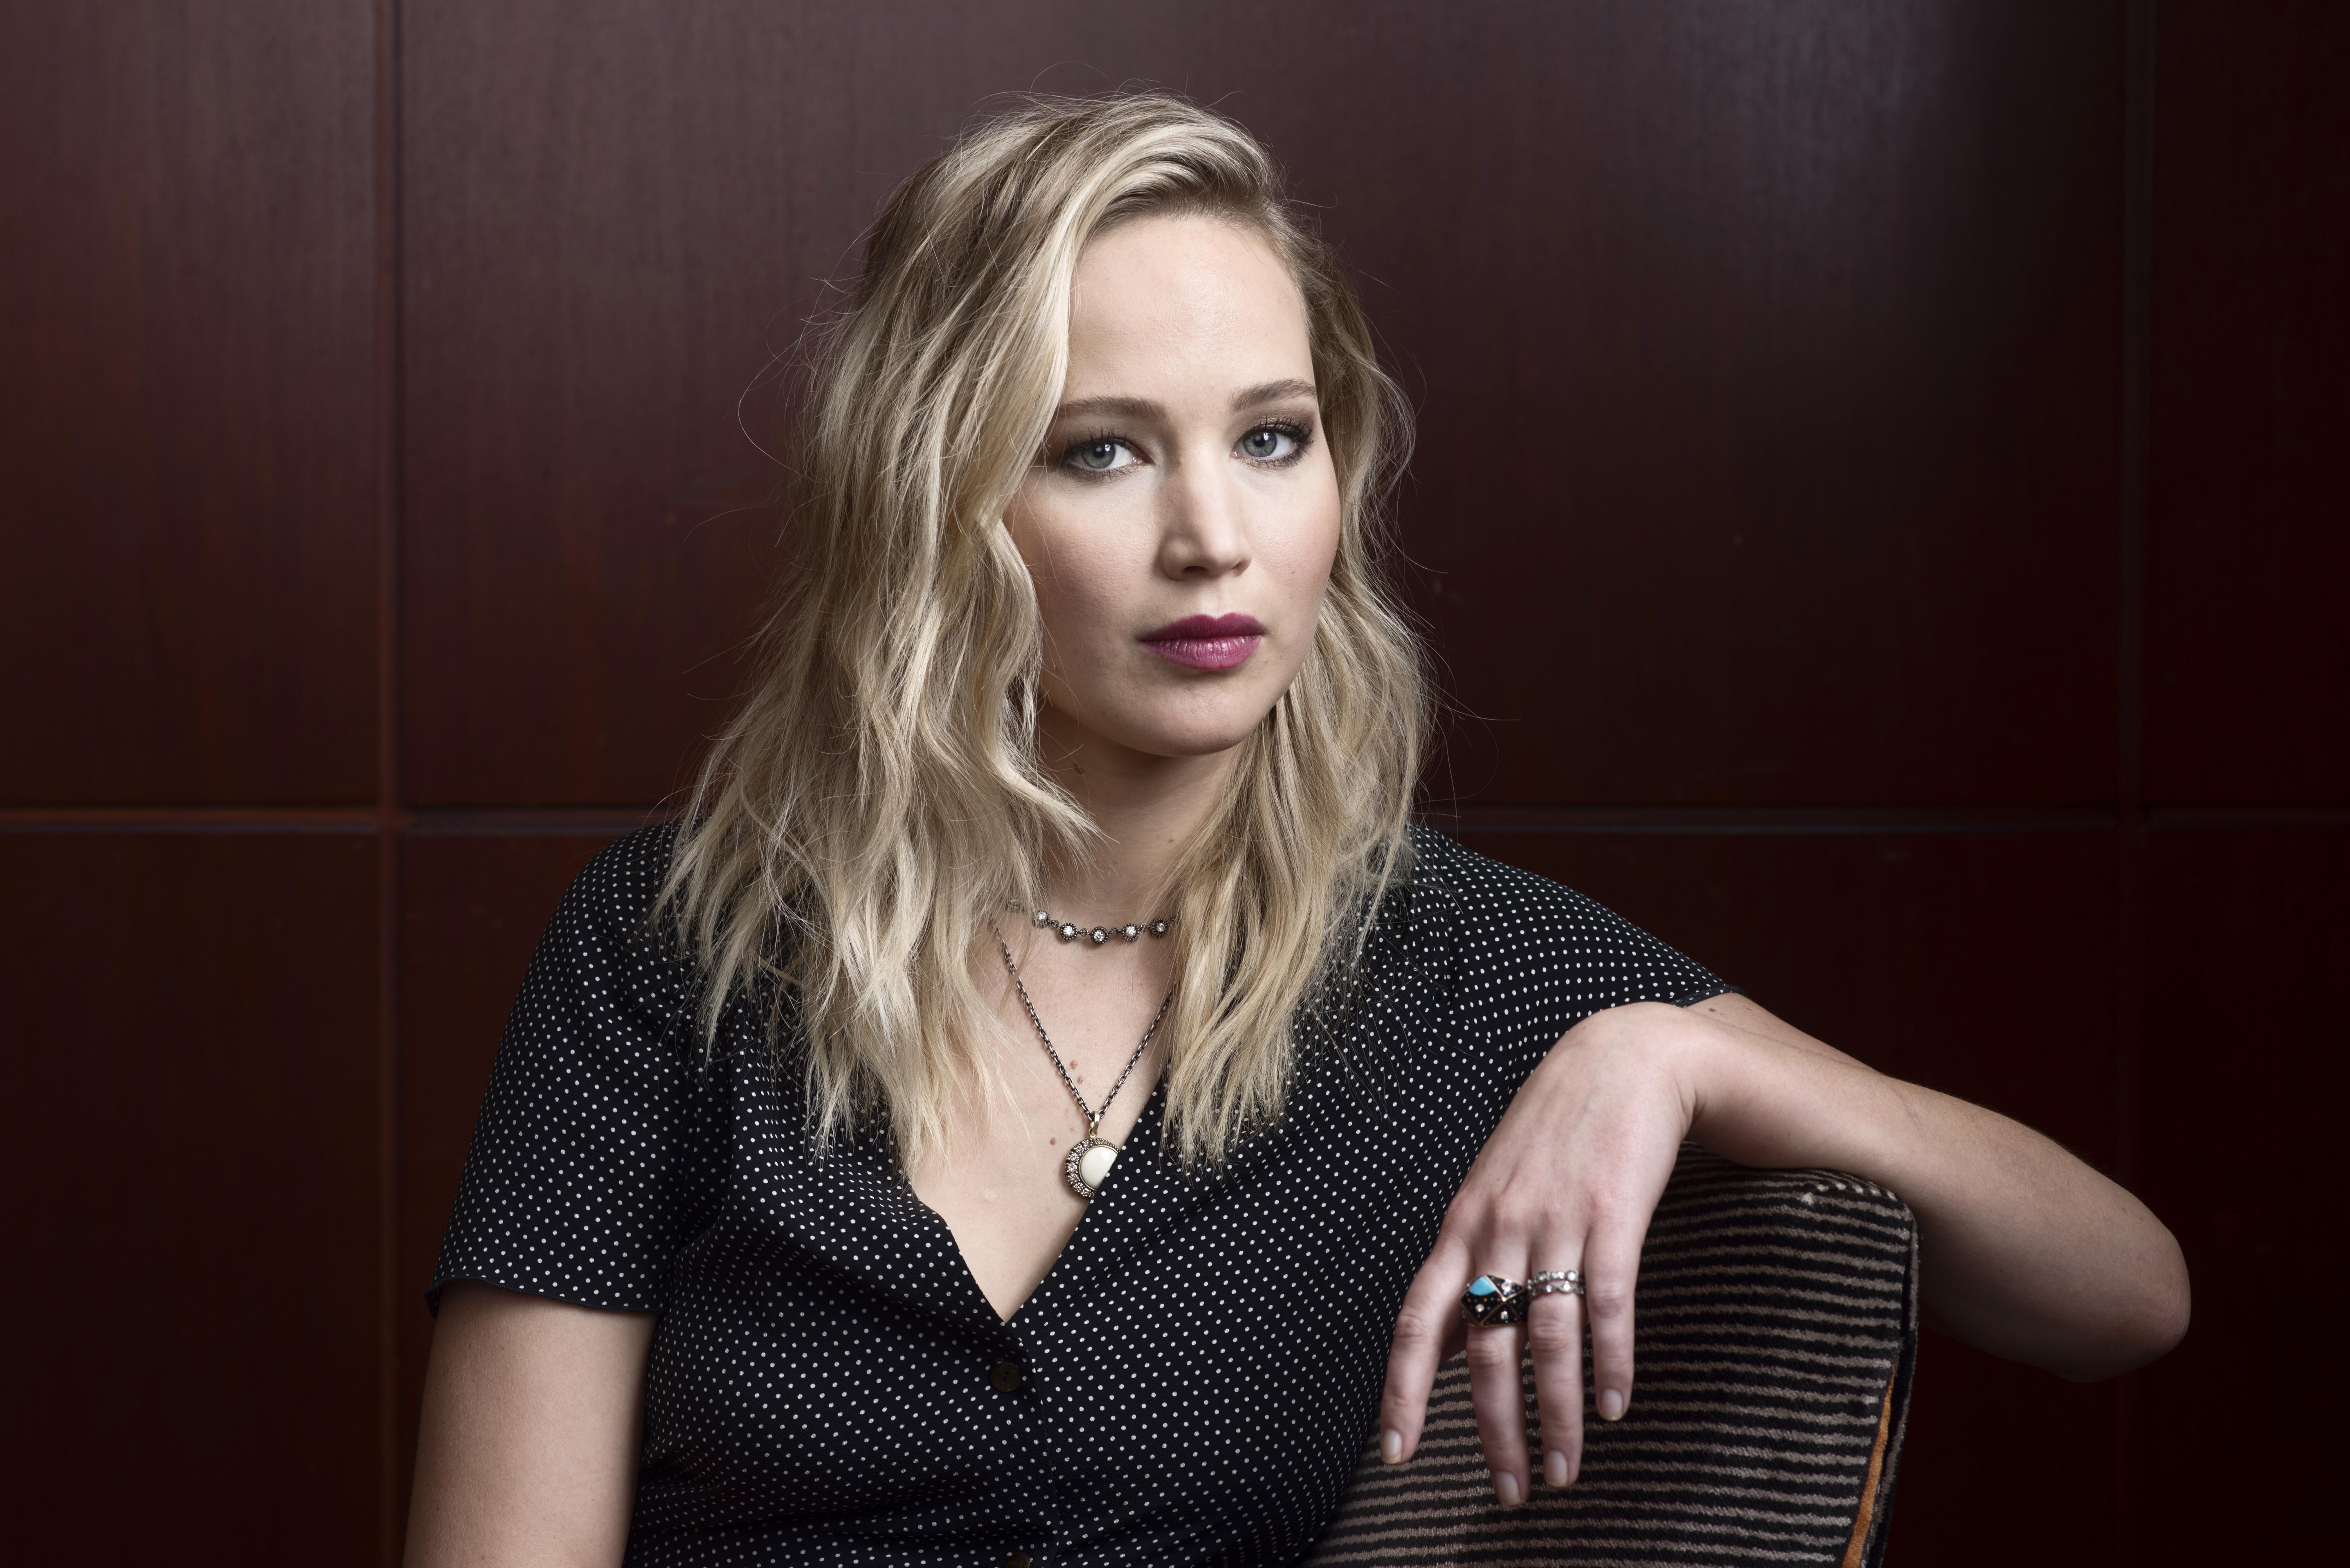 Jennifer Lawrence 2019 5k, HD Celebrities, 4k Wallpaper, Image